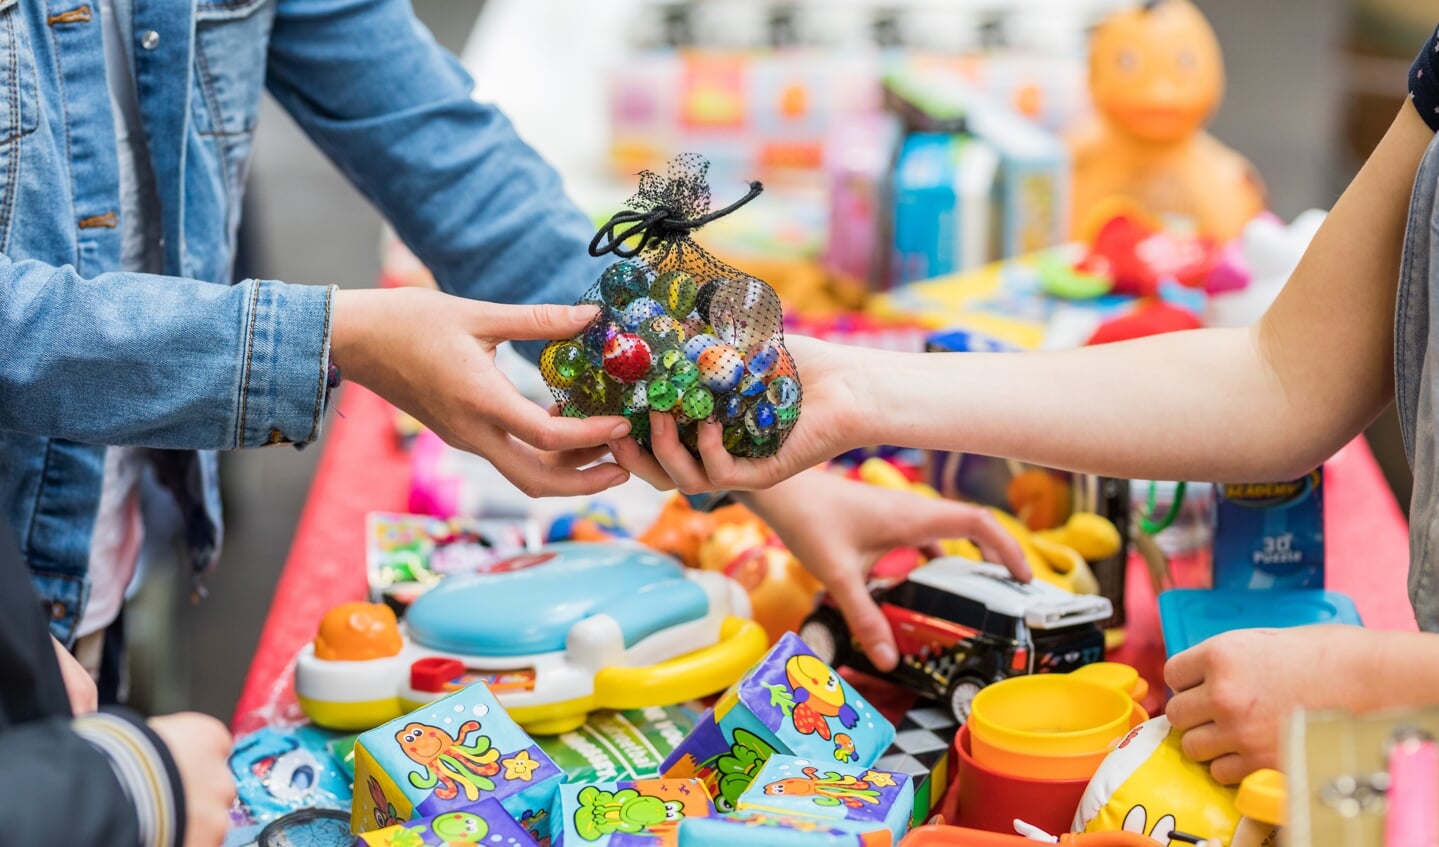 Speelgoed ruilen in plaats van kopen is veel duurzamer, en ruimt ook lekker op. | Foto: pr./Joni Israeli